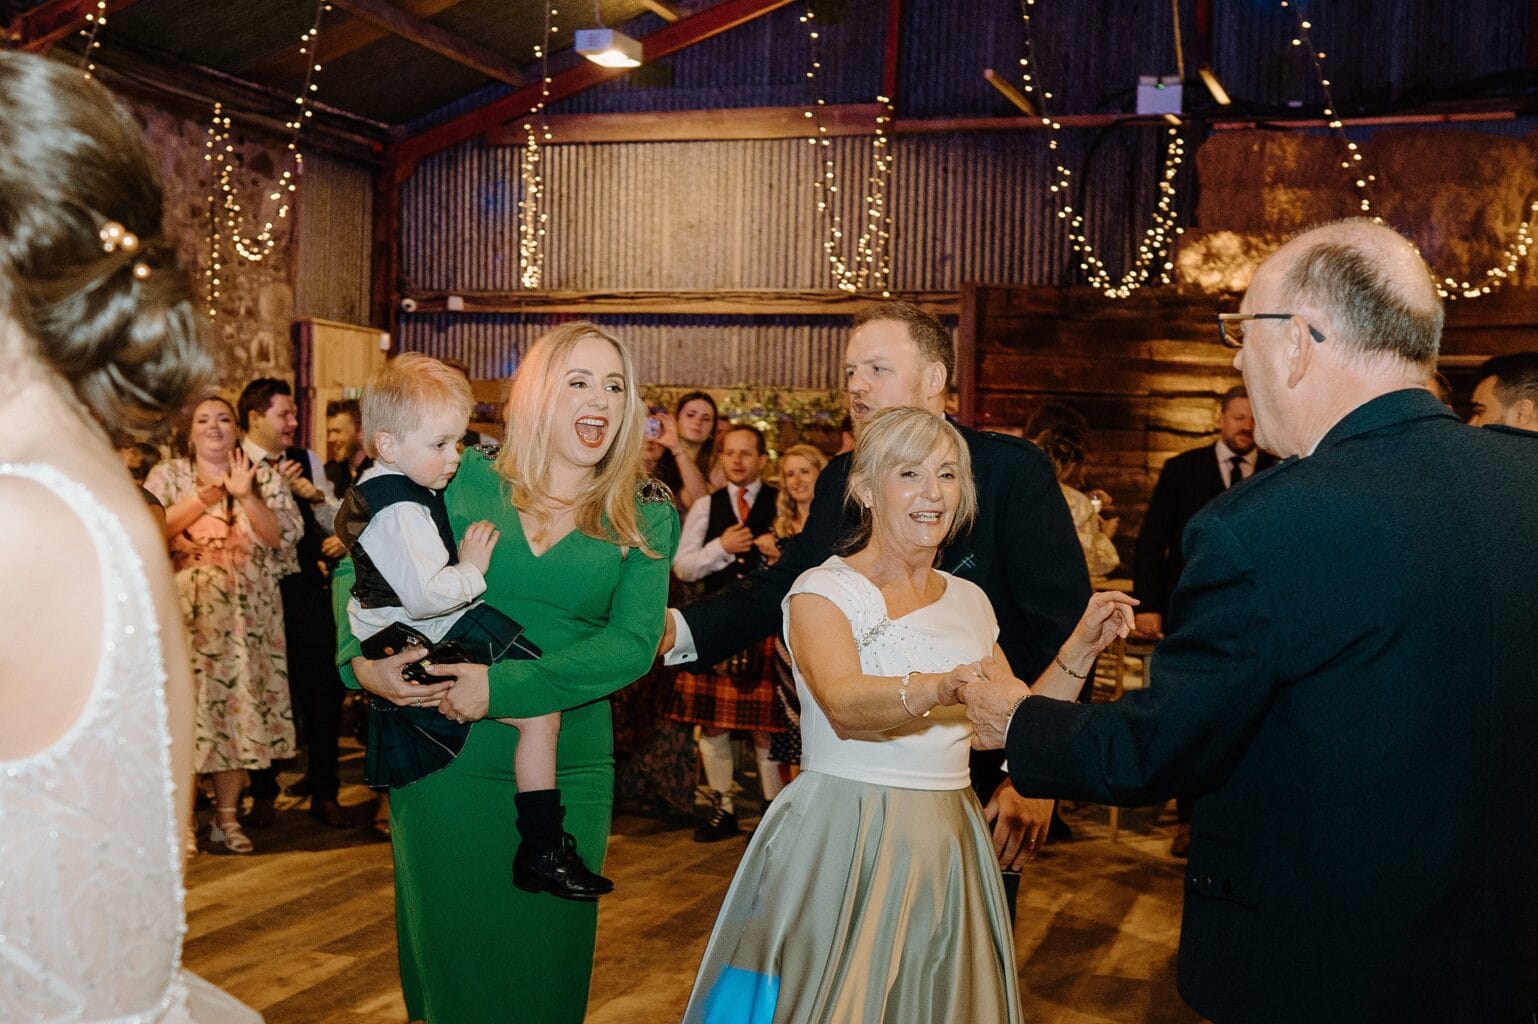 guests dancing beneath festoon lighting at a wedding reception at a farm wedding venue near glasgow scotland